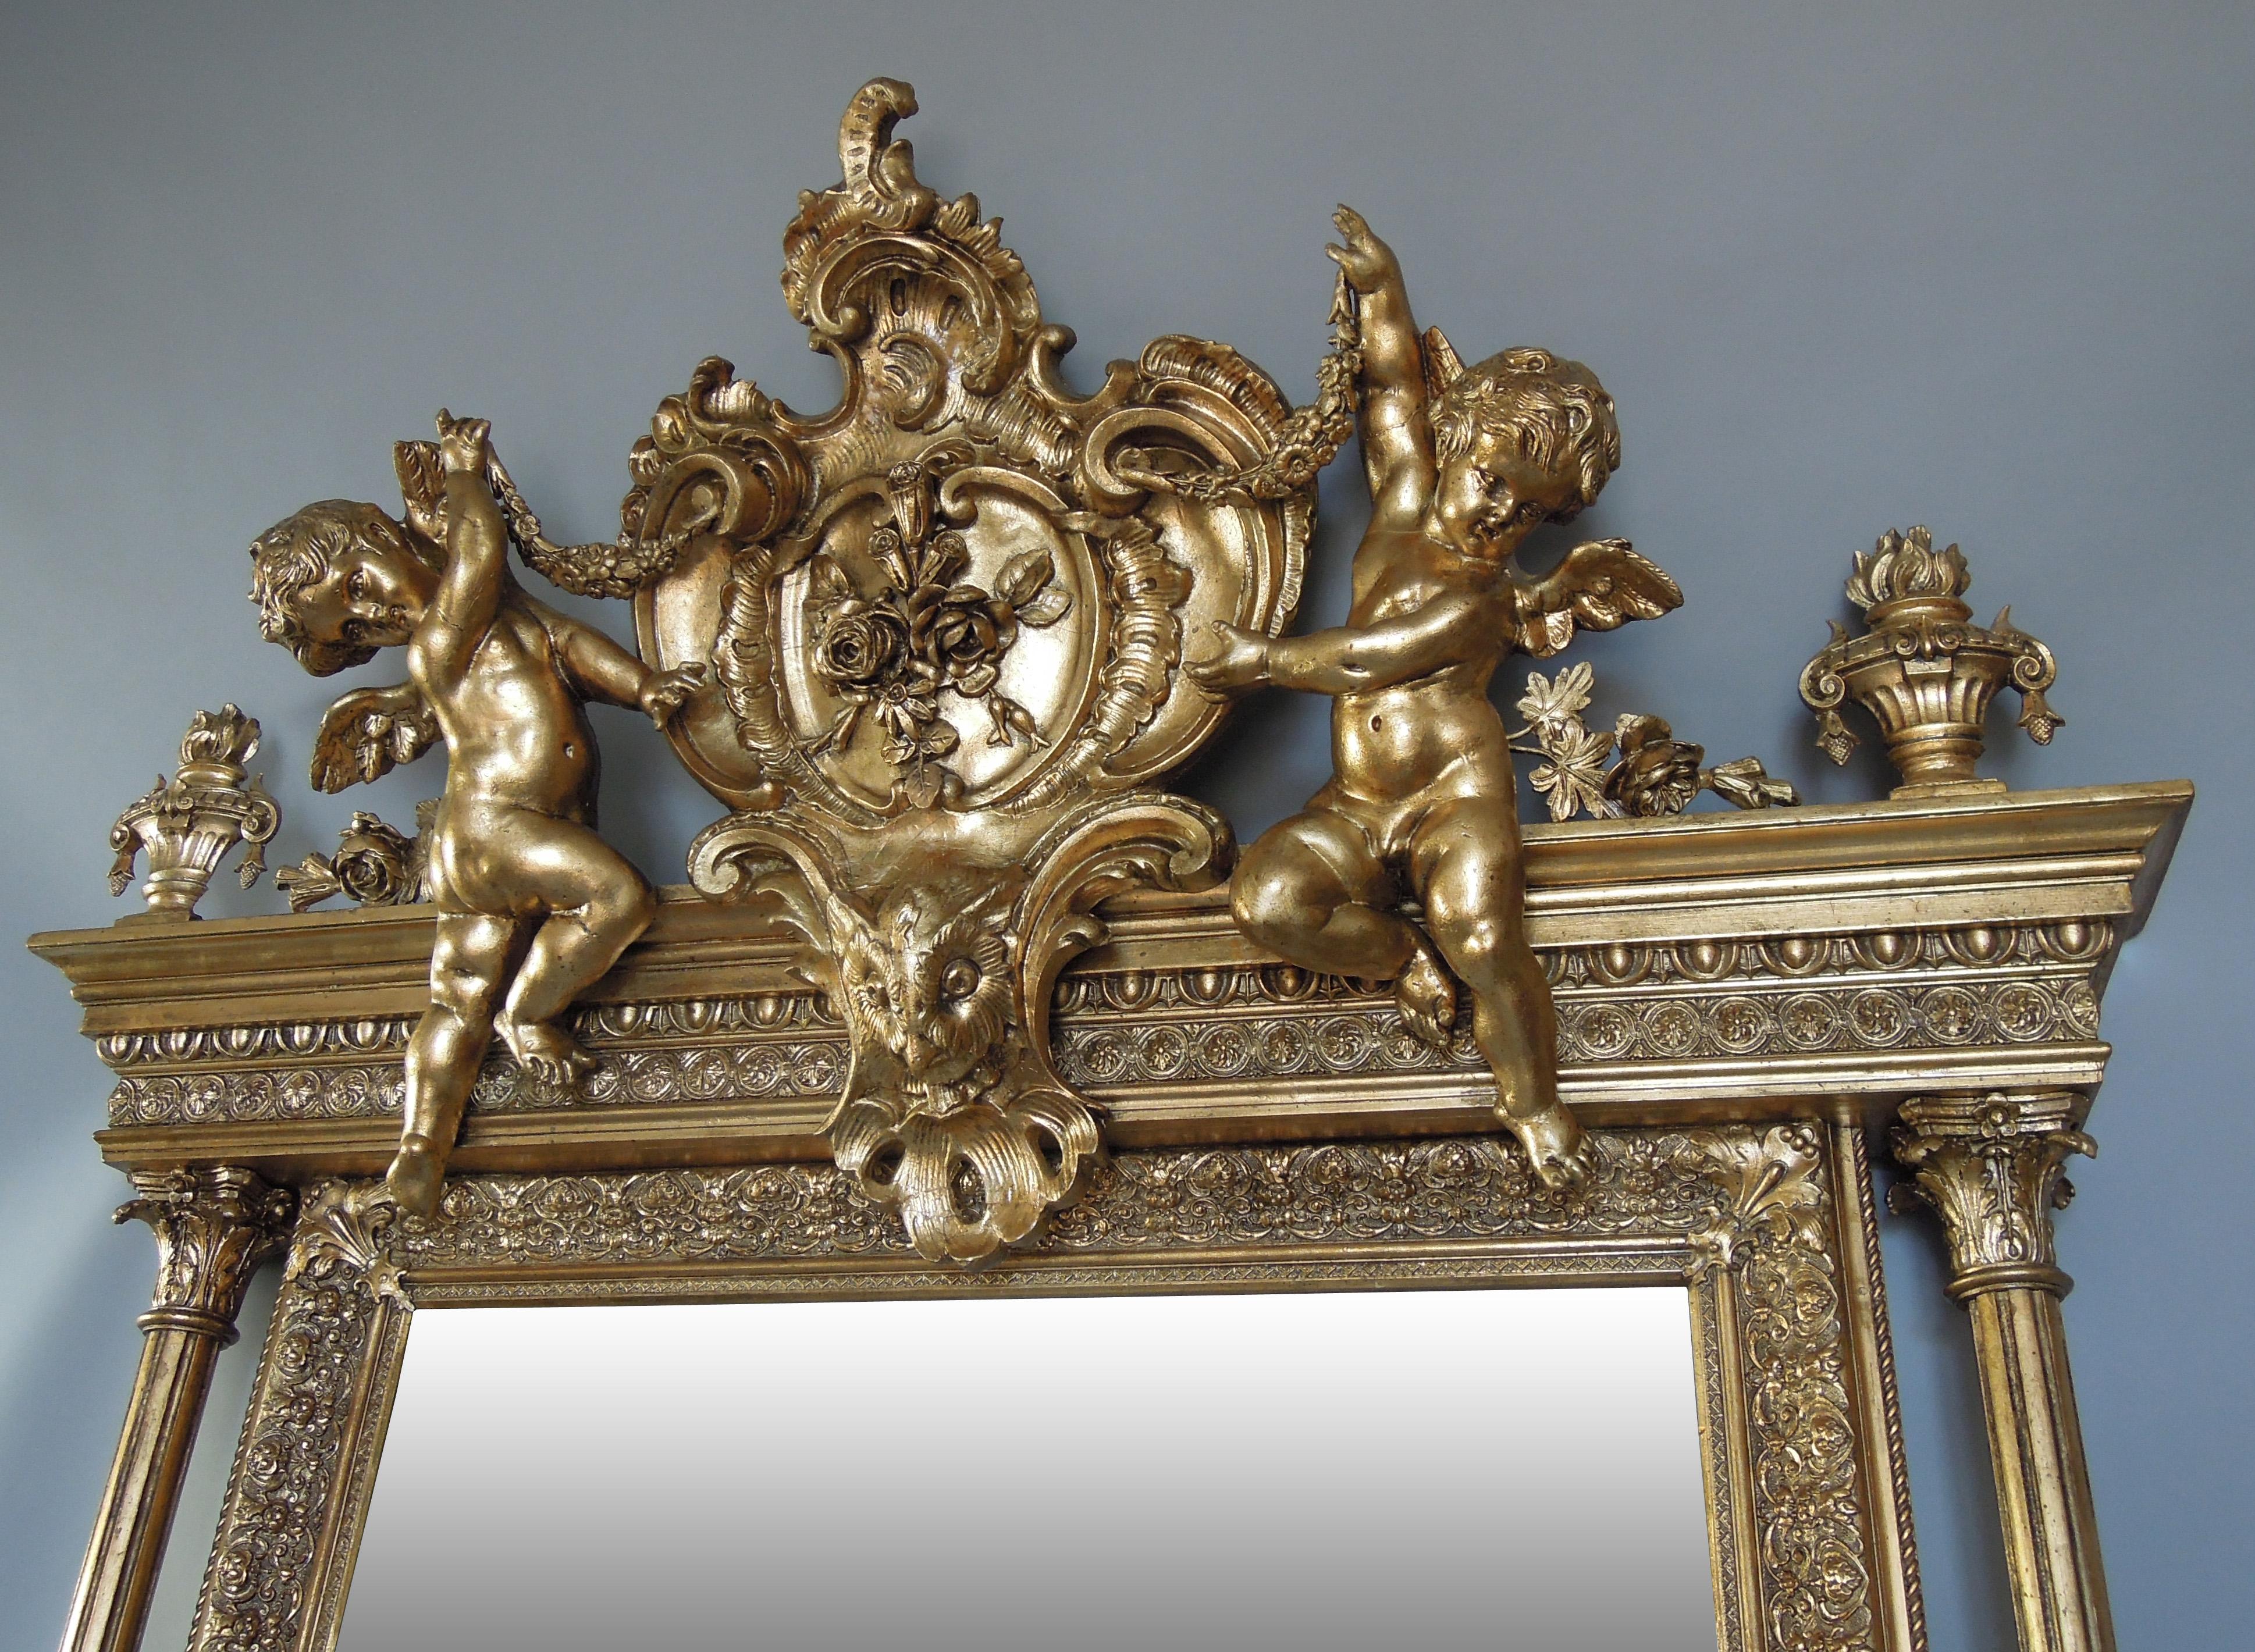 golden frame mirror